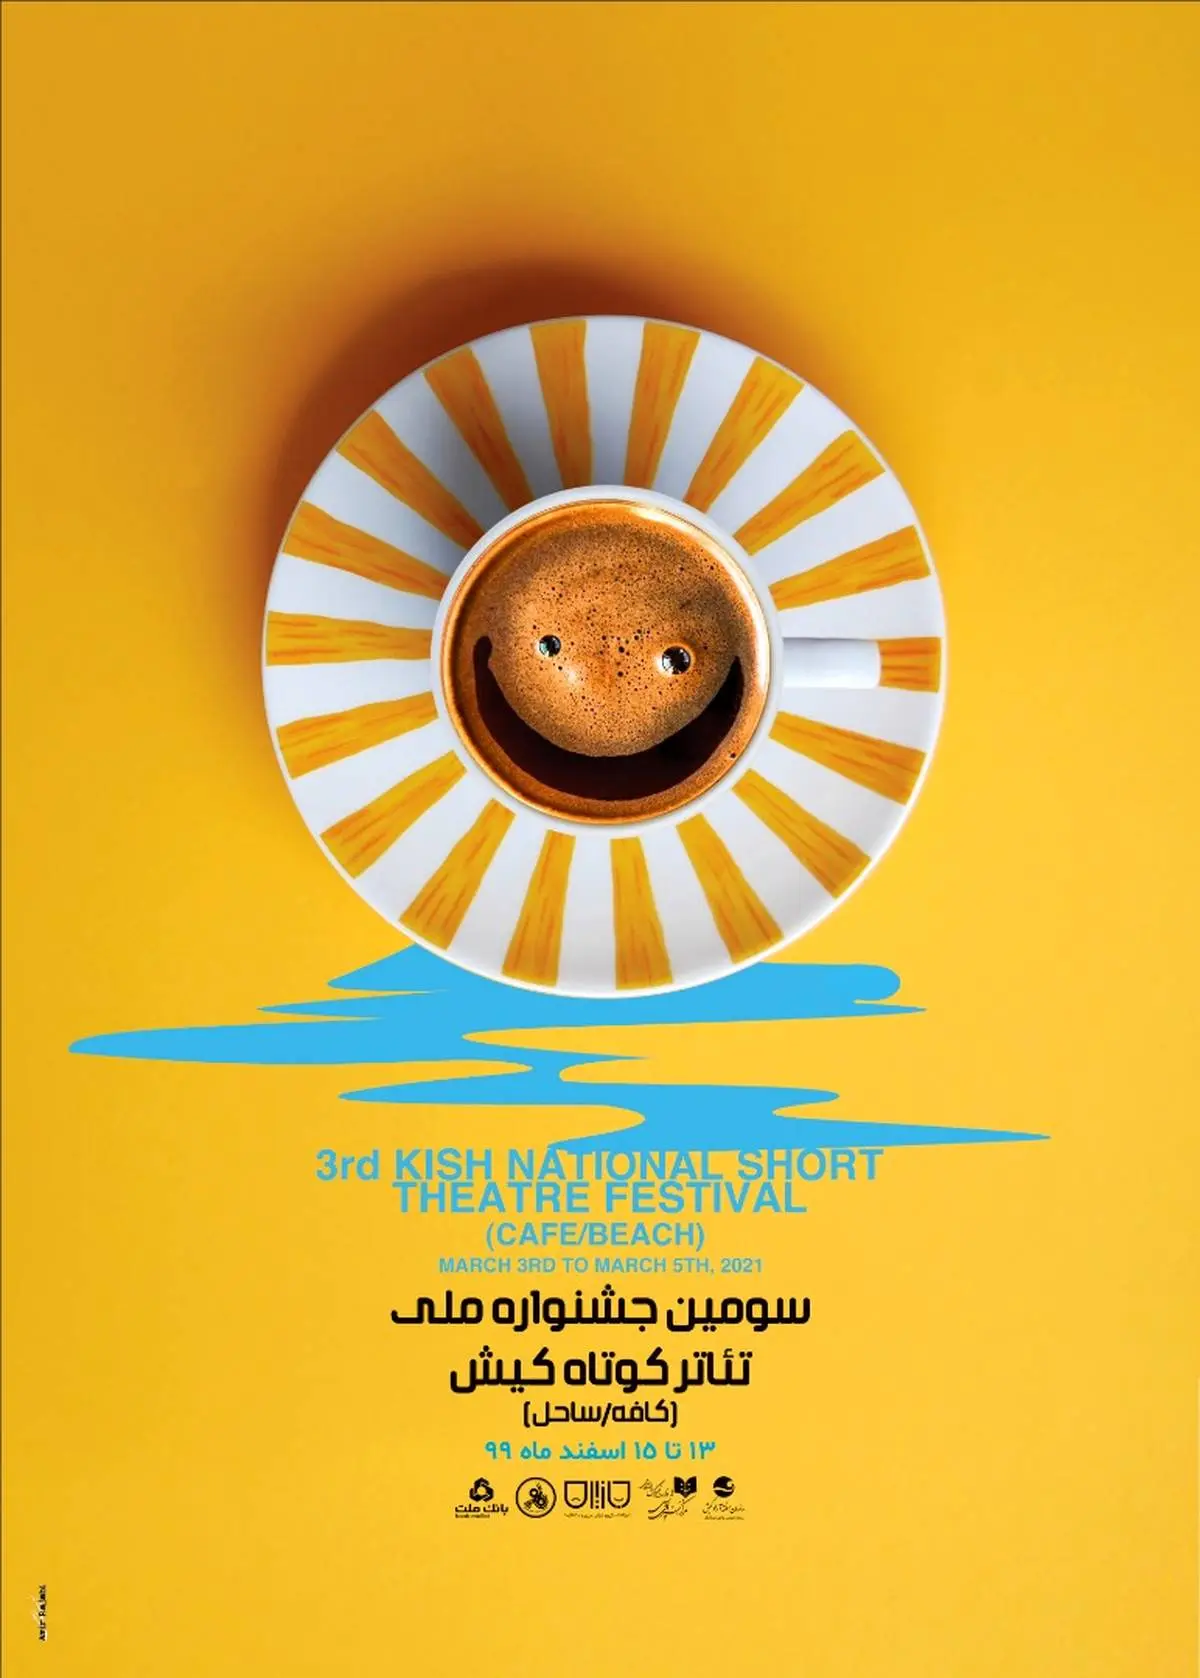 رونمایی از پوستر سومین جشنواره ملی تئاتر کوتاه کیش